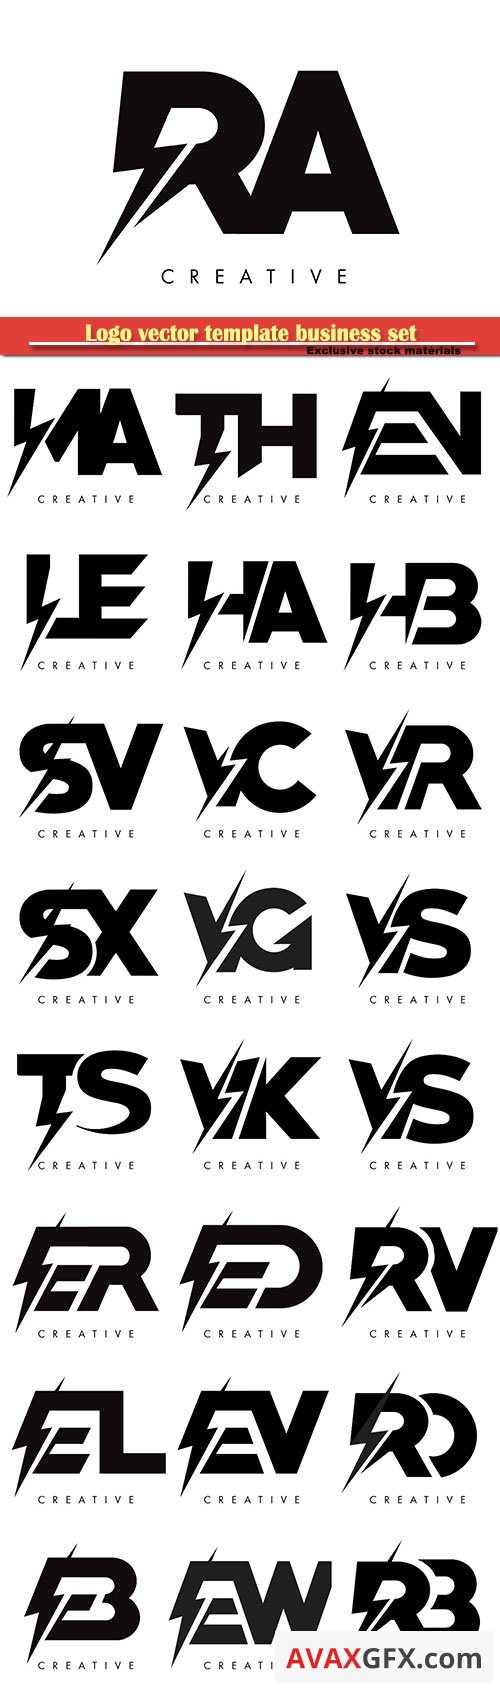 Logo vector template business set # 3